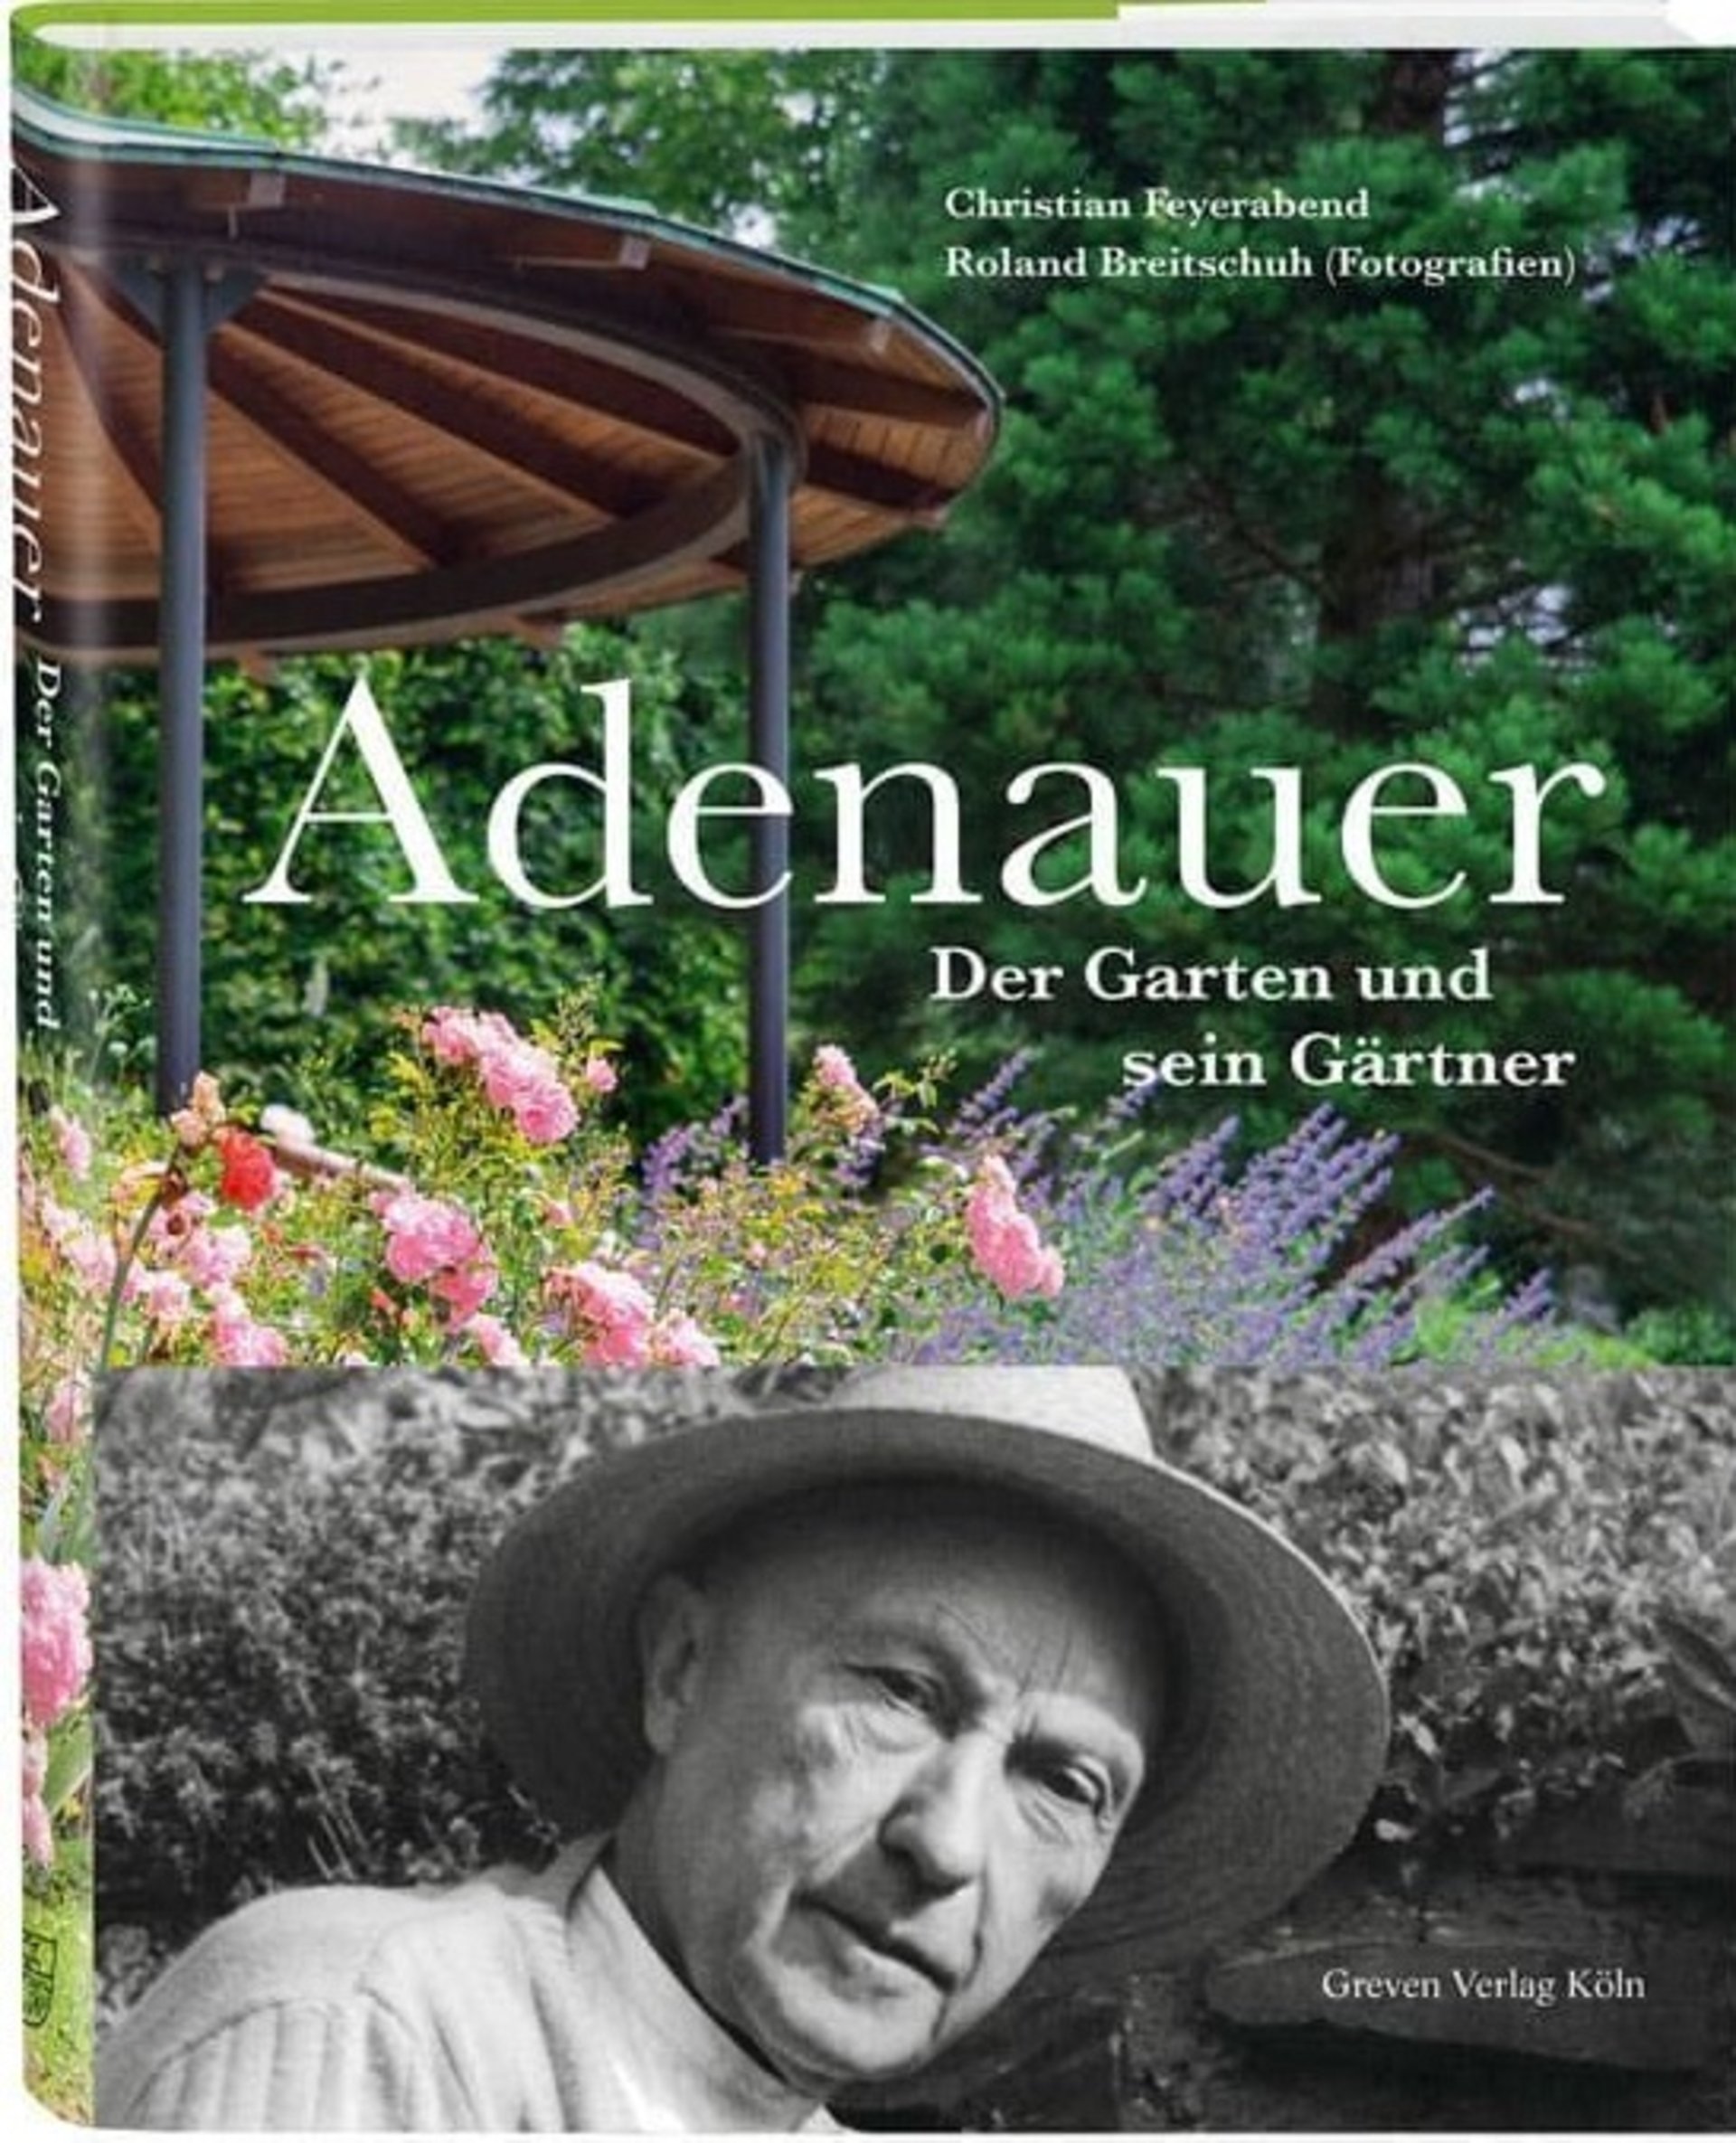 Buchcover: Blumen farbig im Hintergrund, Kopf von Adenauer in schwarz-weiß im Vordergrund